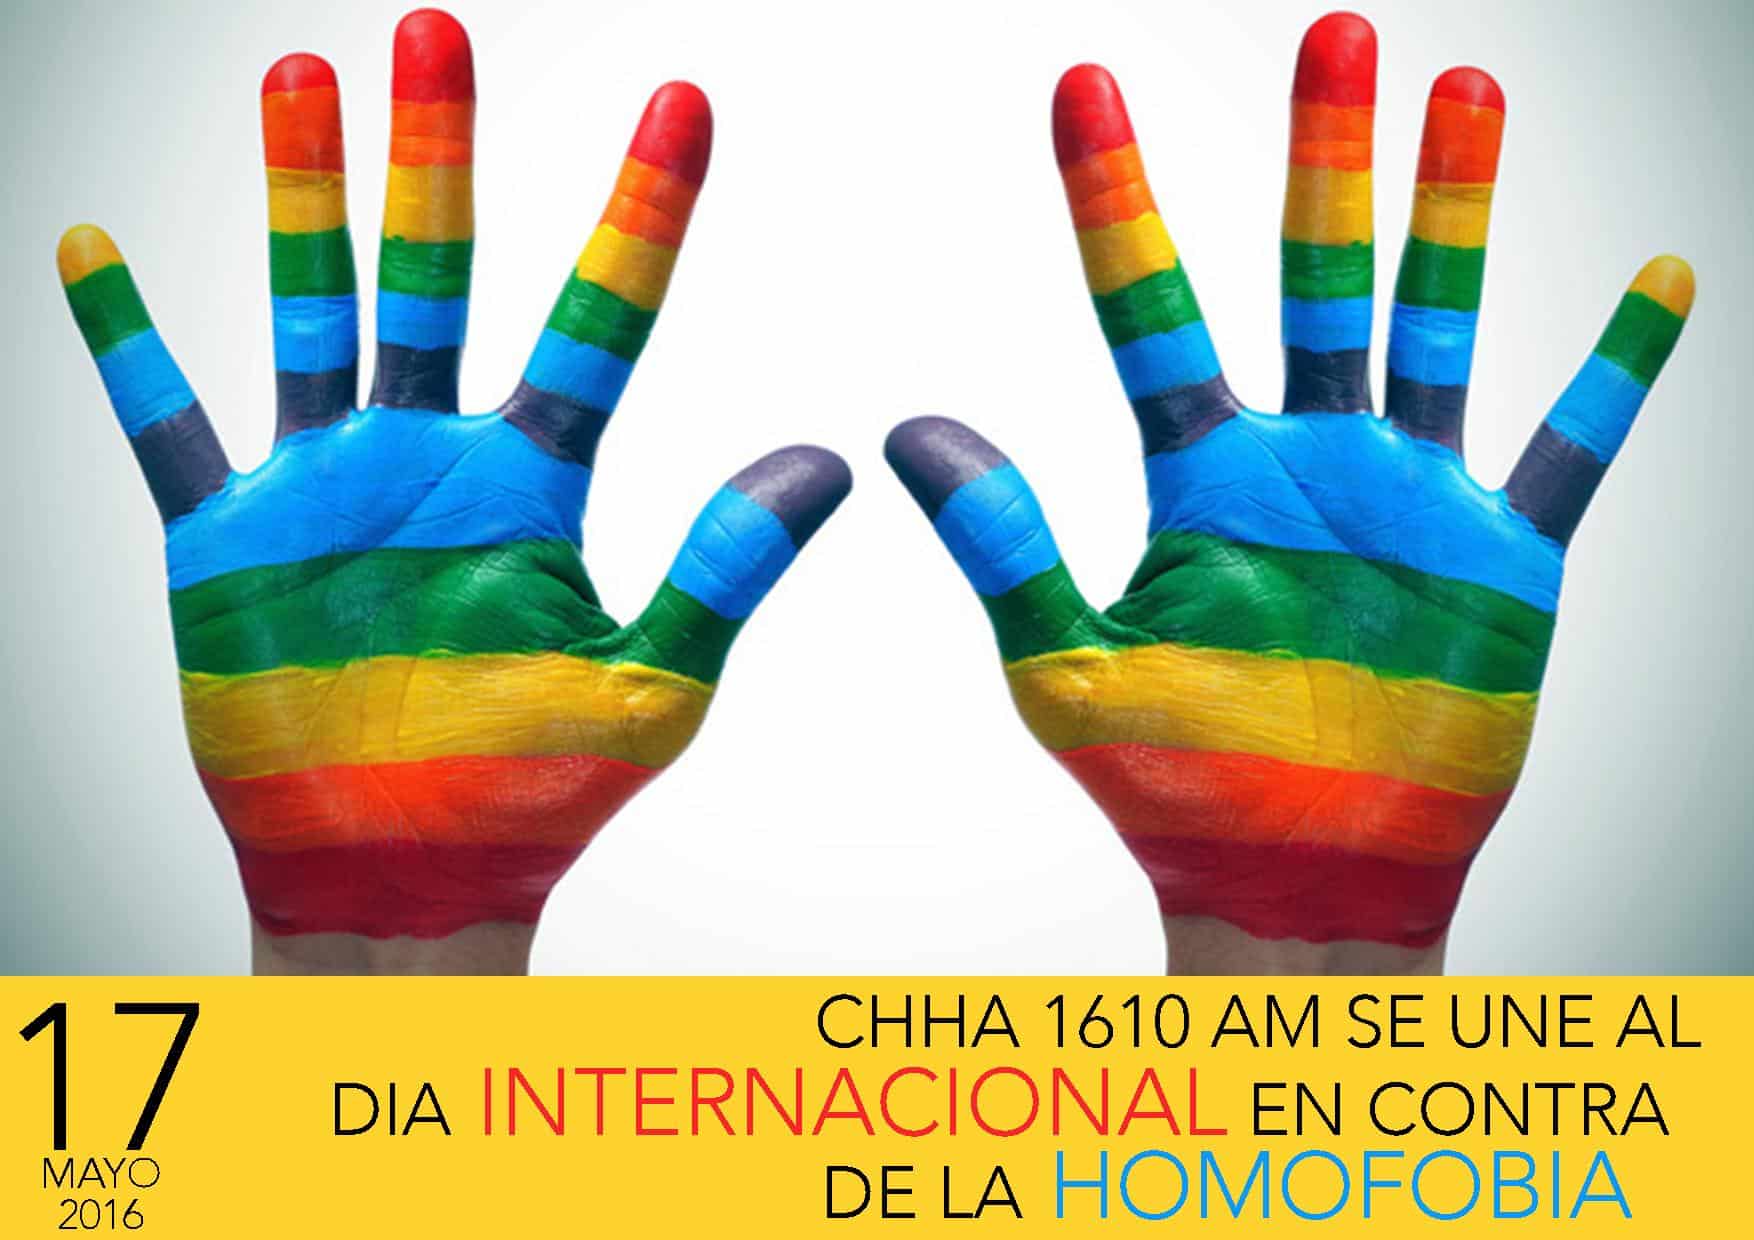 17 de Mayo, Día Internacional en contra de la homofobia y transfobia